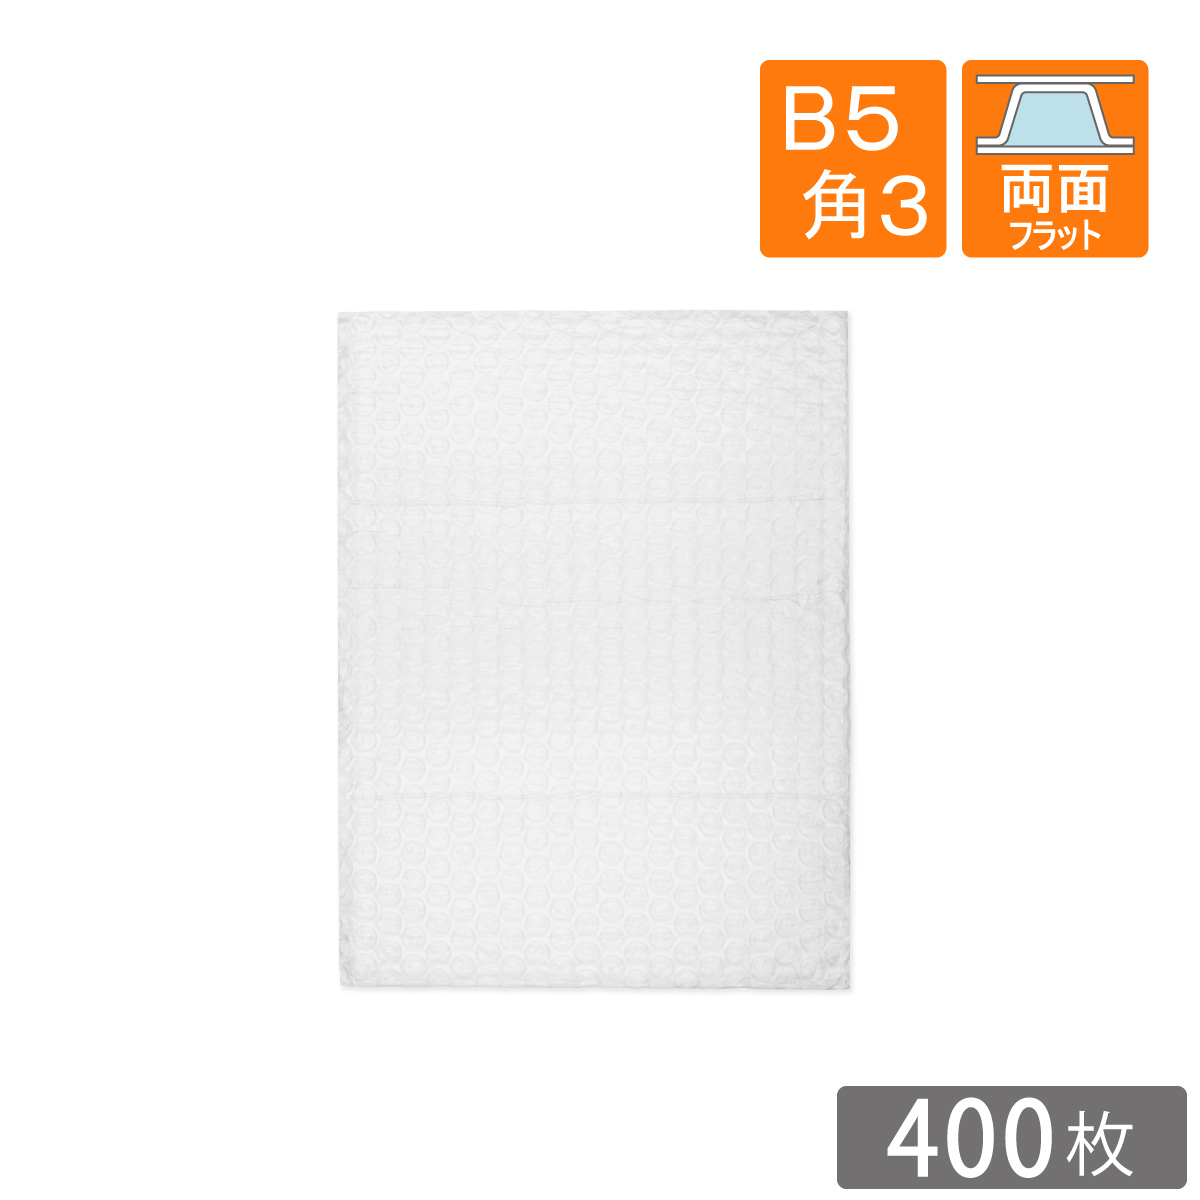 日本最大のブランド ライトロン袋 ミラーマット袋 180×230mm A5 角5 厚さ1mm 600枚